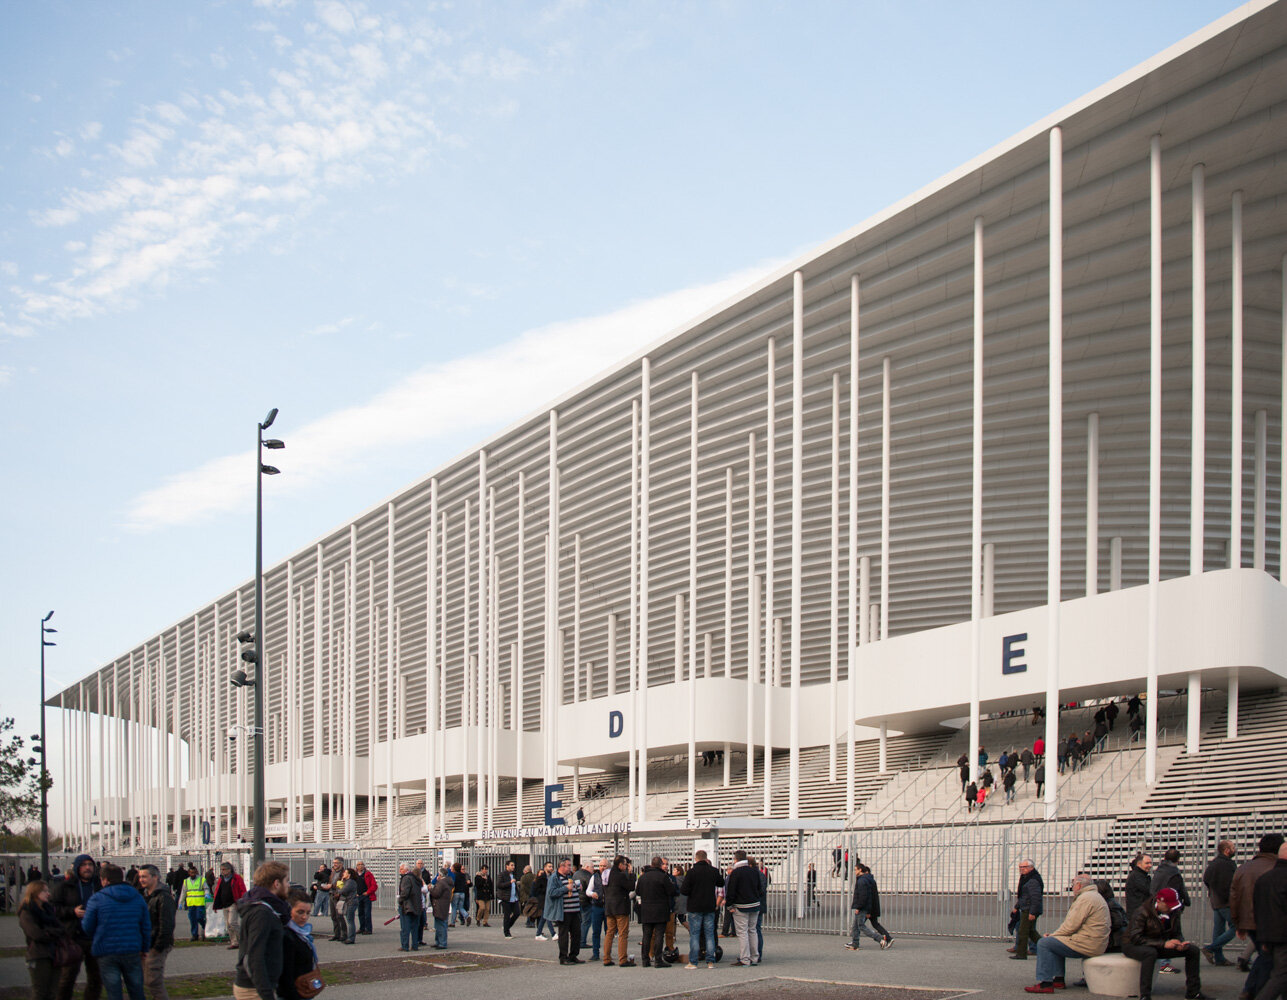  Stade Matmut Atlantique. Avec le Département de la Gironde. Bordeaux, France. Avril 2016 // Matmut Atlantique stadium. With the Department of Gironde. Bordeaux, France. April 2016. 